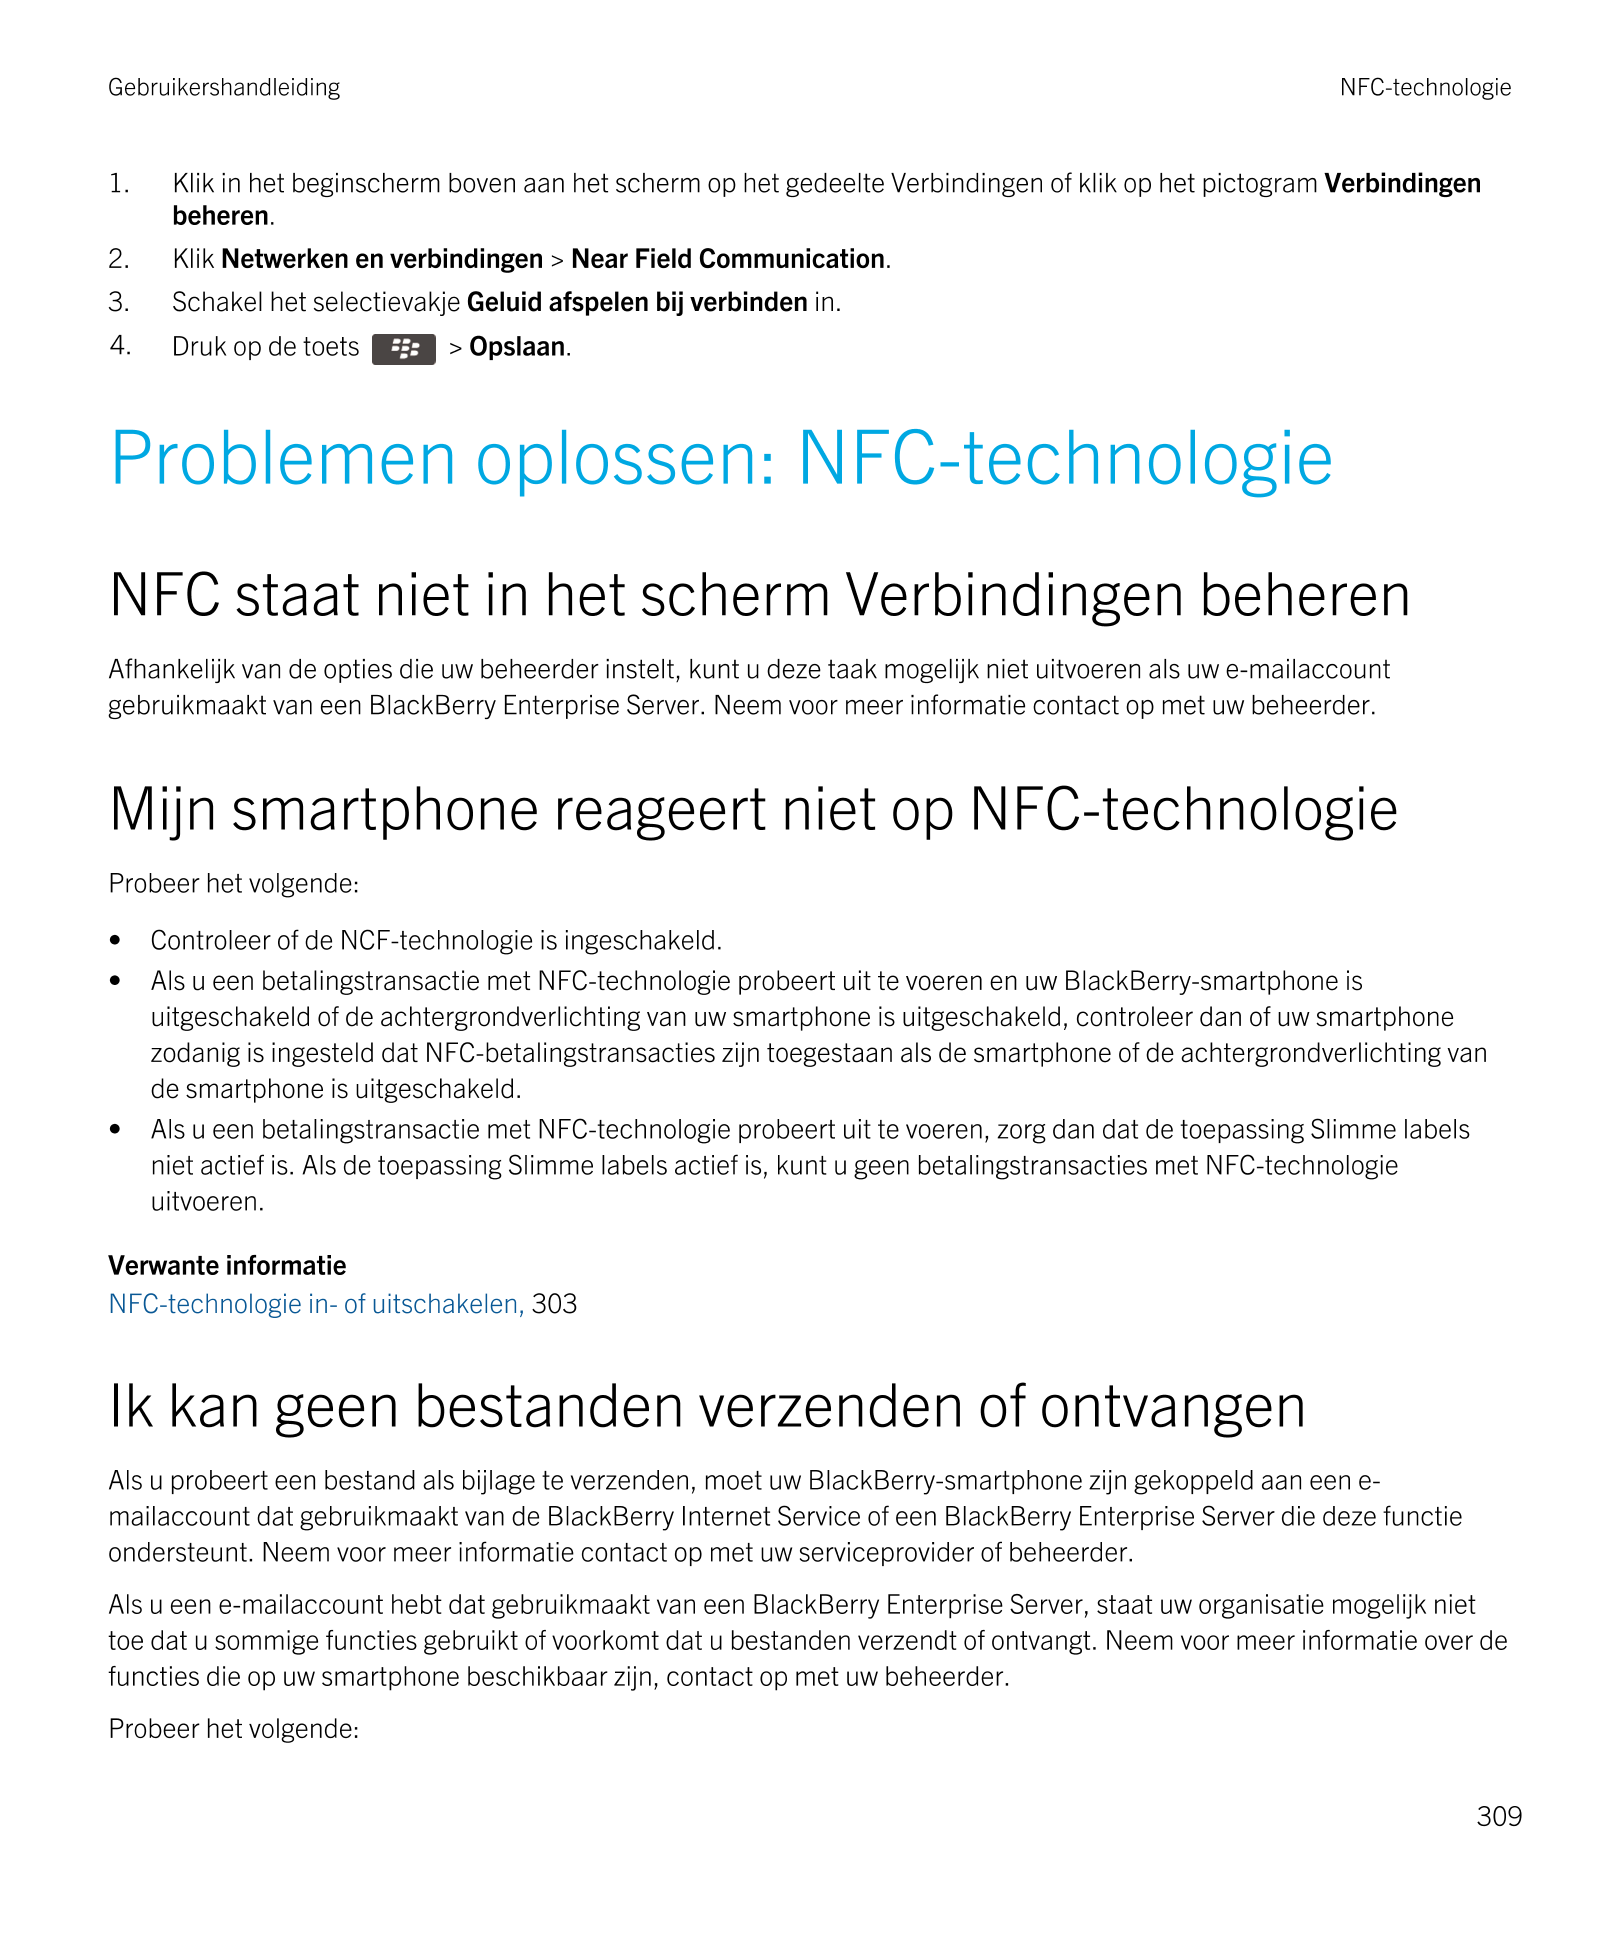 Gebruikershandleiding NFC-technologie
1. Klik in het beginscherm boven aan het scherm op het gedeelte Verbindingen of klik op he